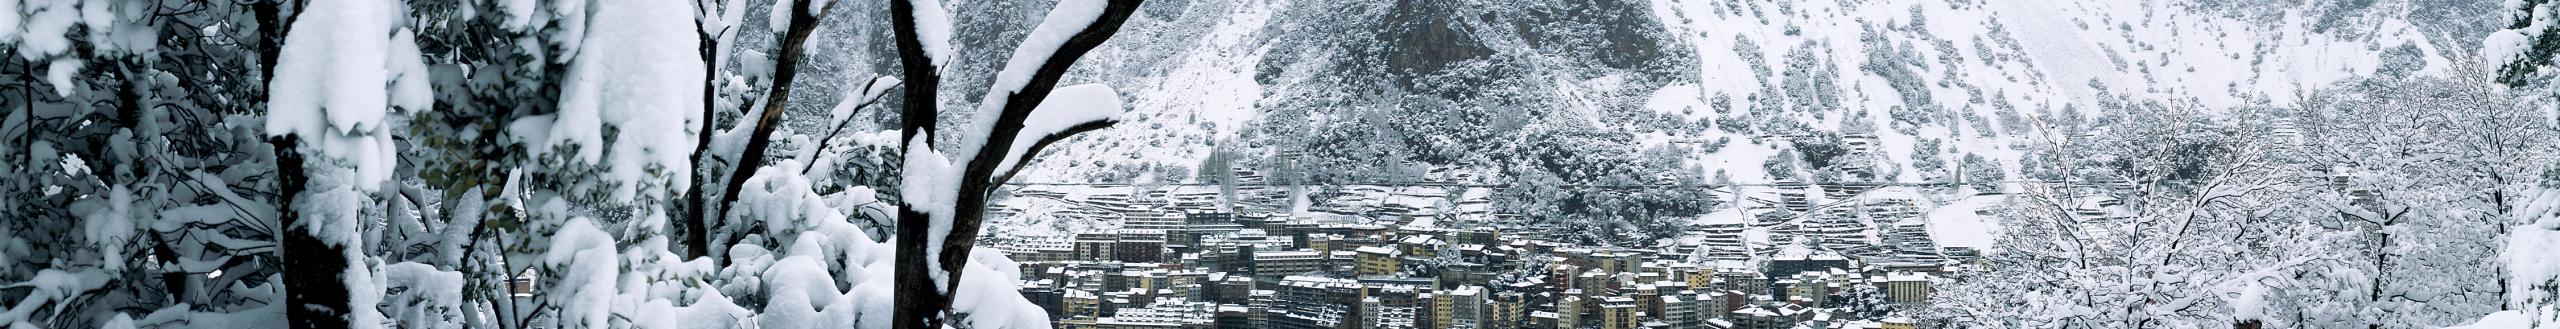 Nieve aire montaña Hotel Les 7 Claus Andorra